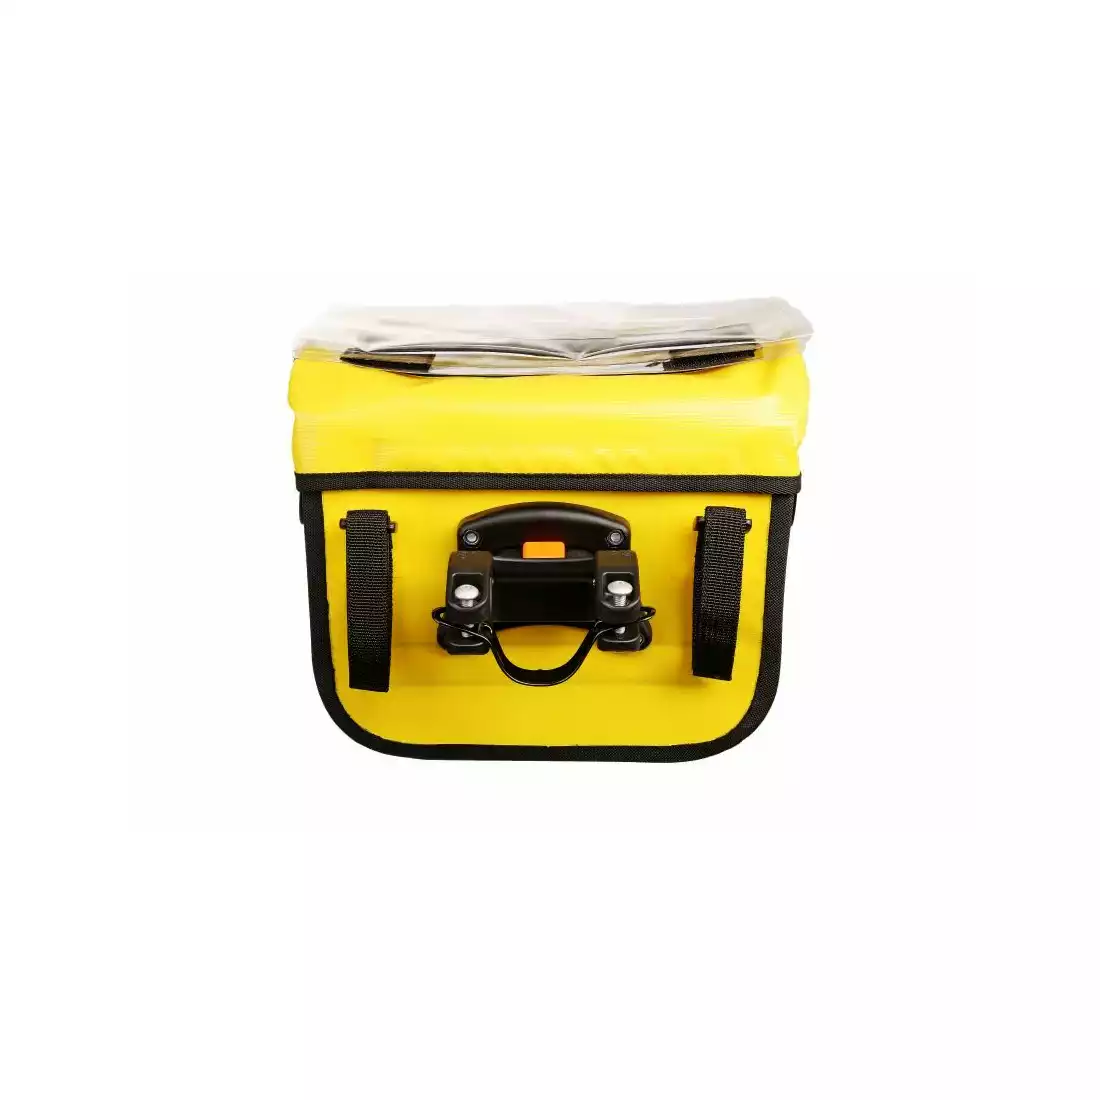 SPORT ARSENAL 310 EXPEDICE Wodoszczelna sakwa na kierownice klick-fix, zółta